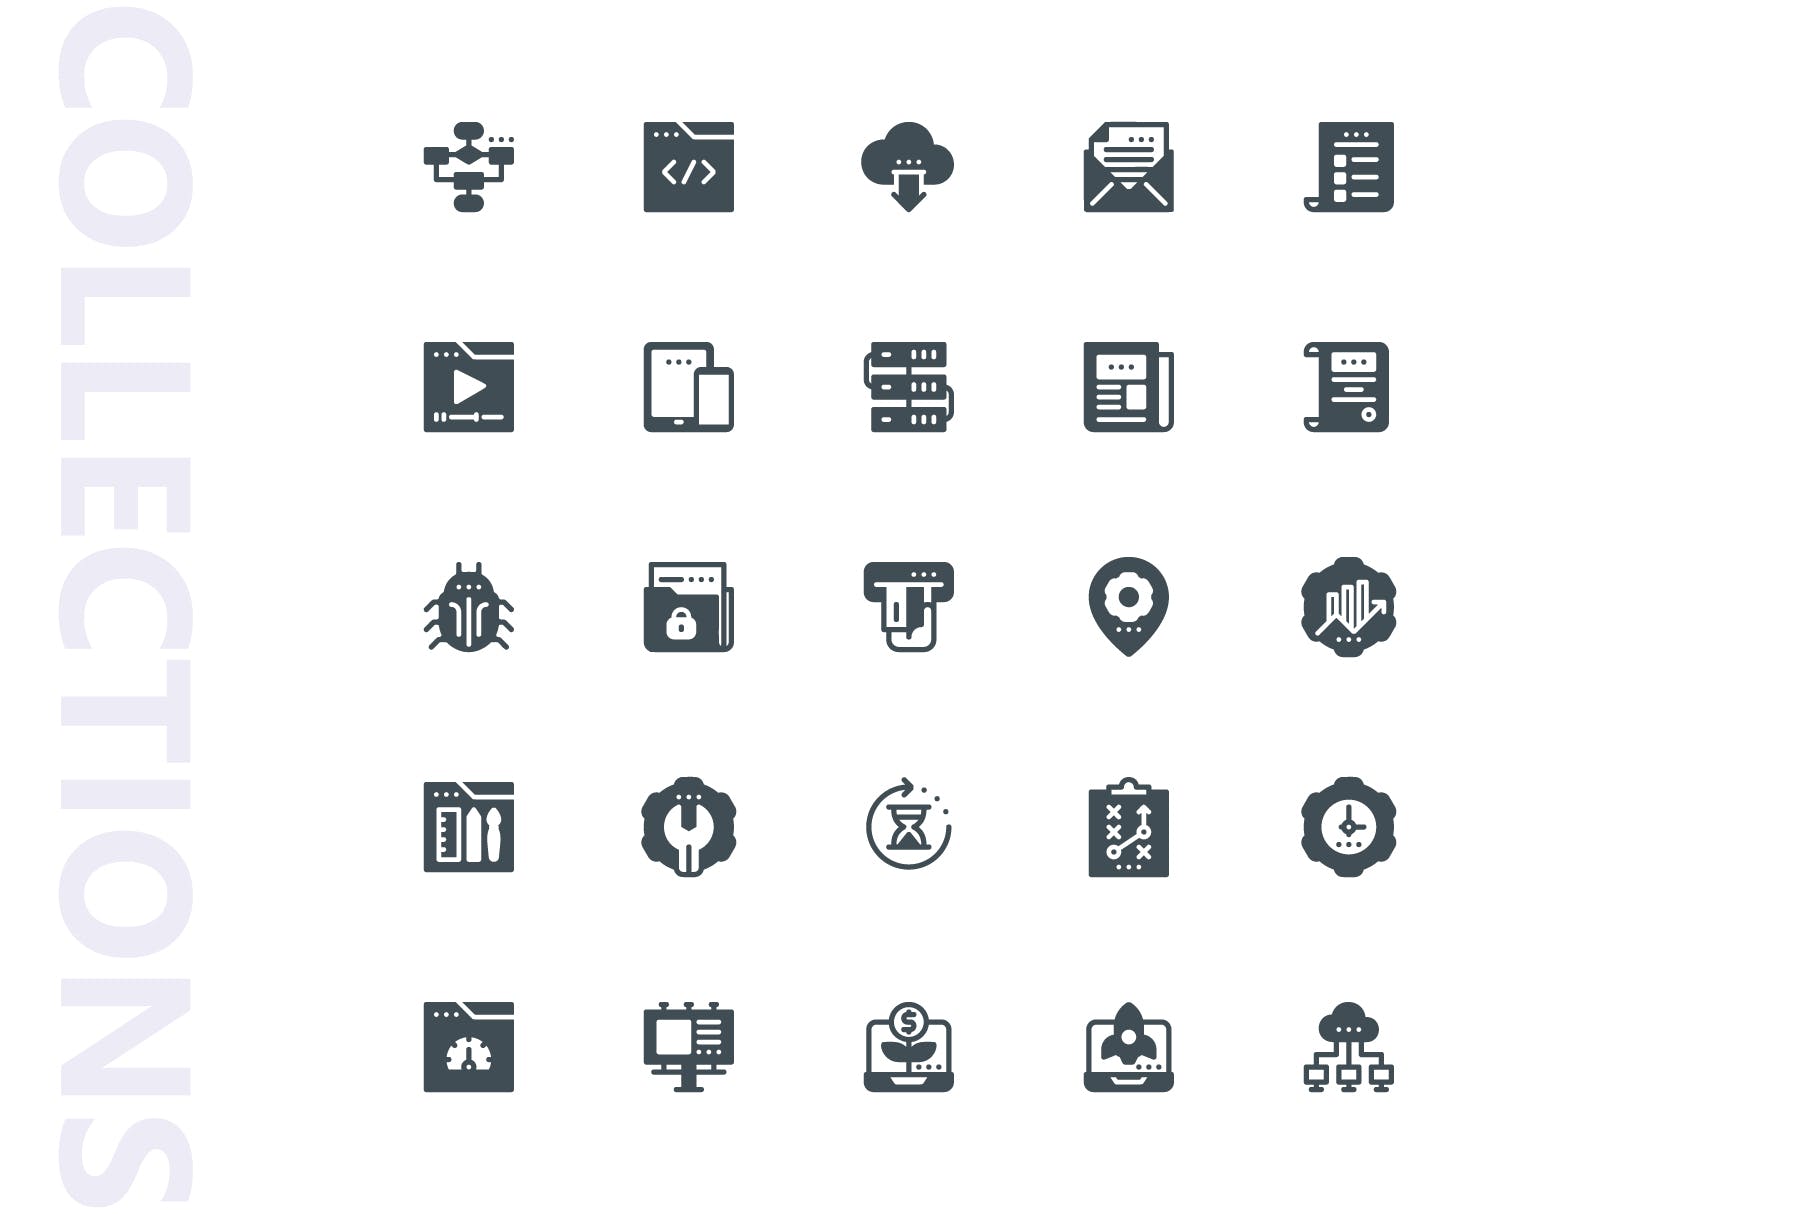 25枚SEO搜索引擎优化营销矢量字体素材库精选图标v1 SEO Marketing Glyph Icons插图(3)